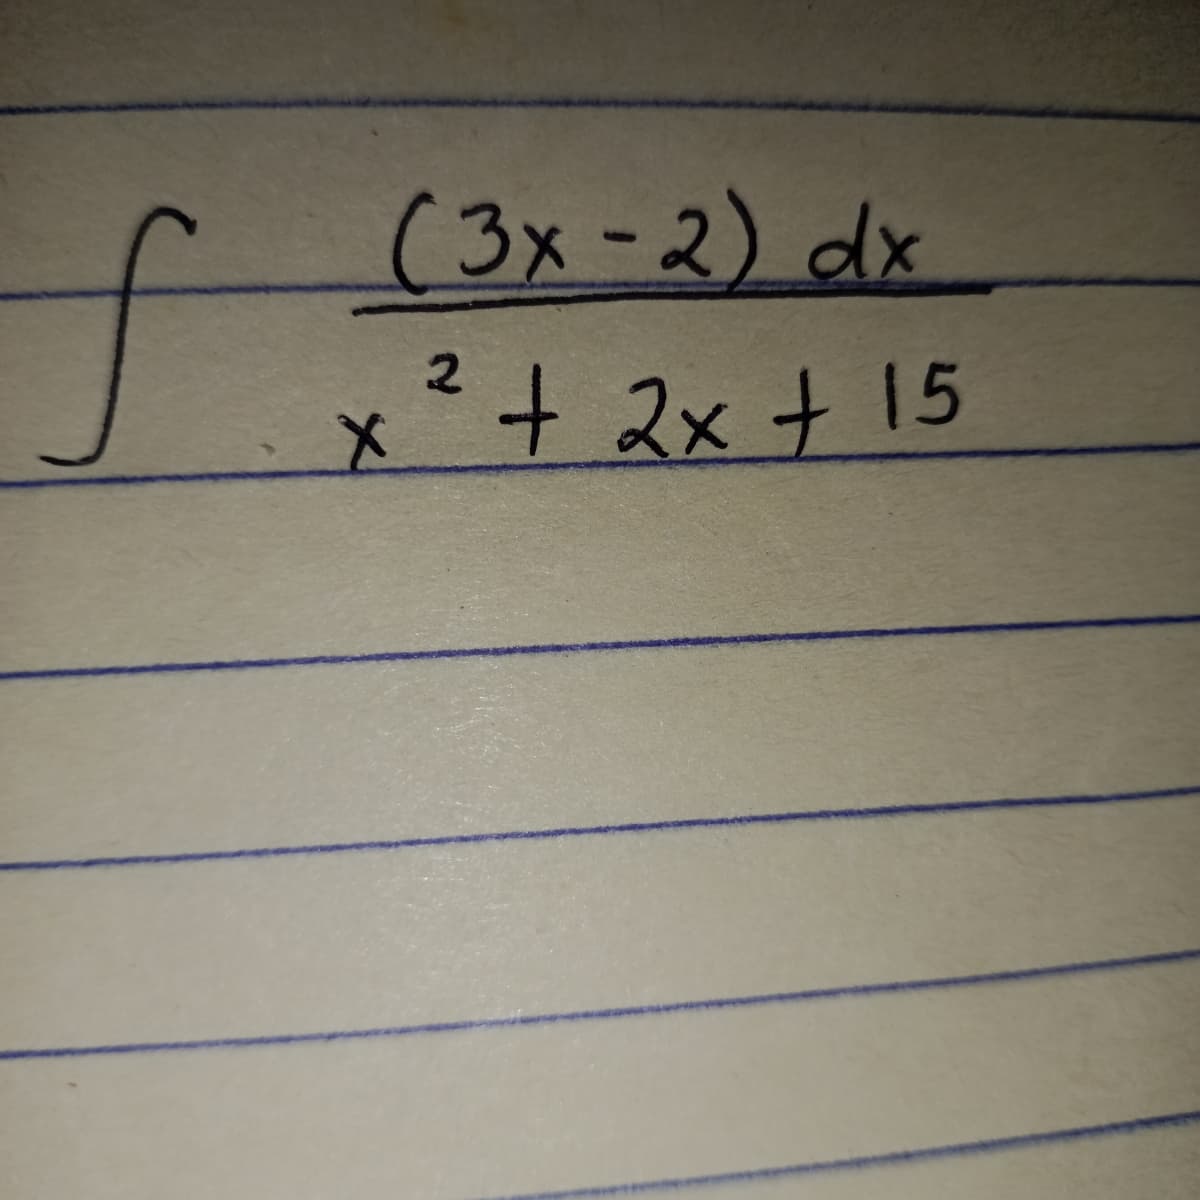 (3x-2) dx
2.
X + 2x t 15
